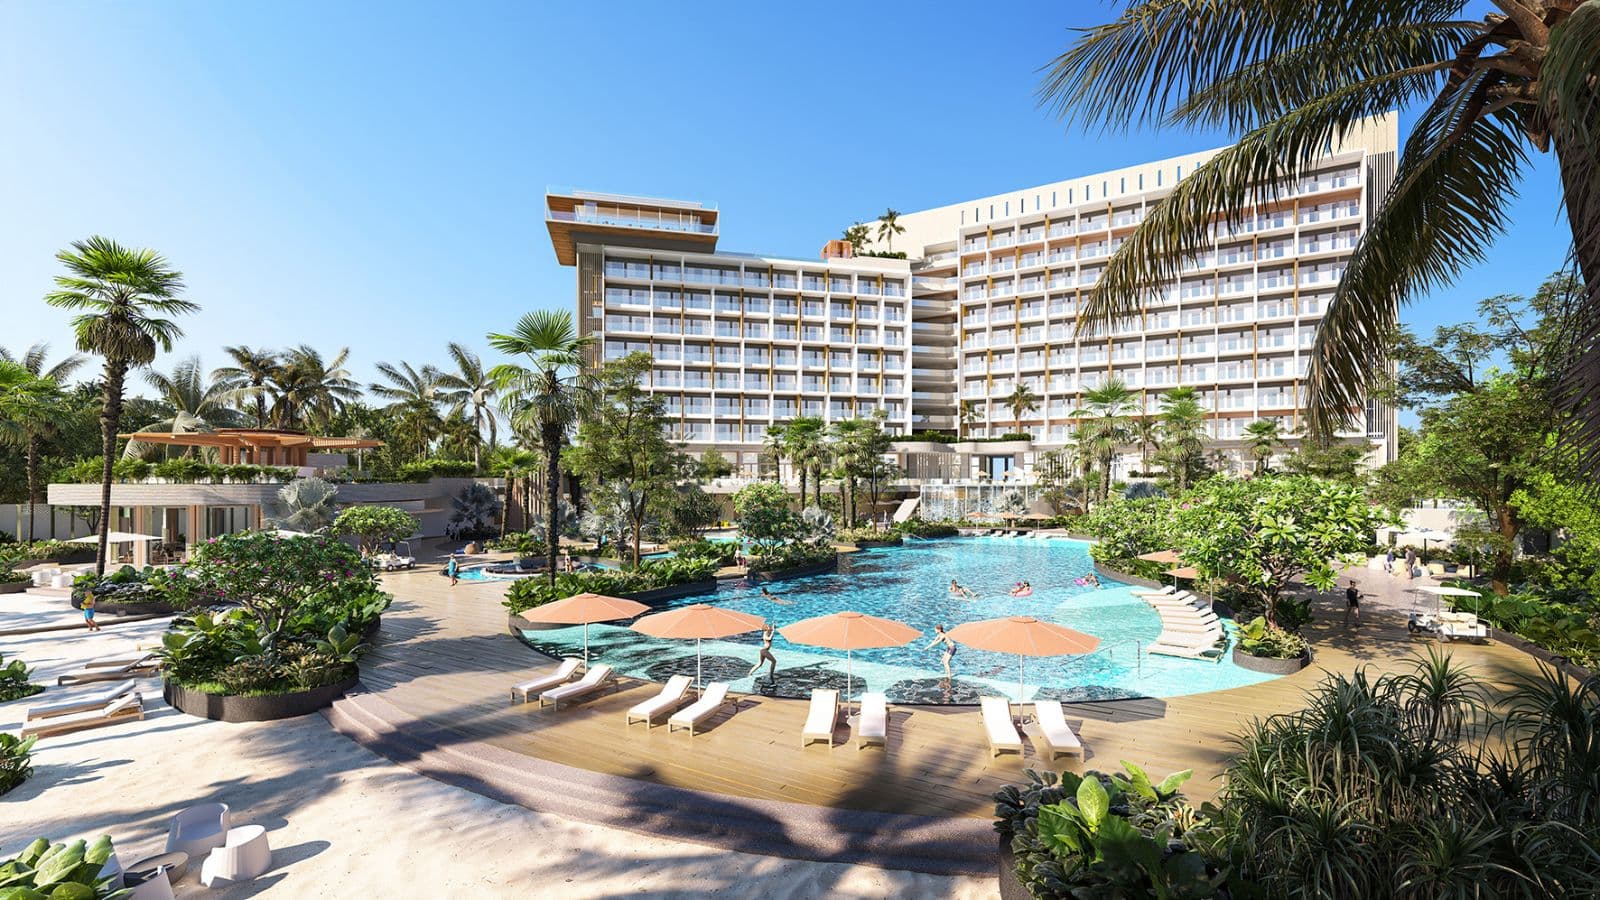 Tập đoàn Banyan Tree công bố kế hoạch quản lý 14 khách sạn và khu nghỉ dưỡng mới tại Việt Nam